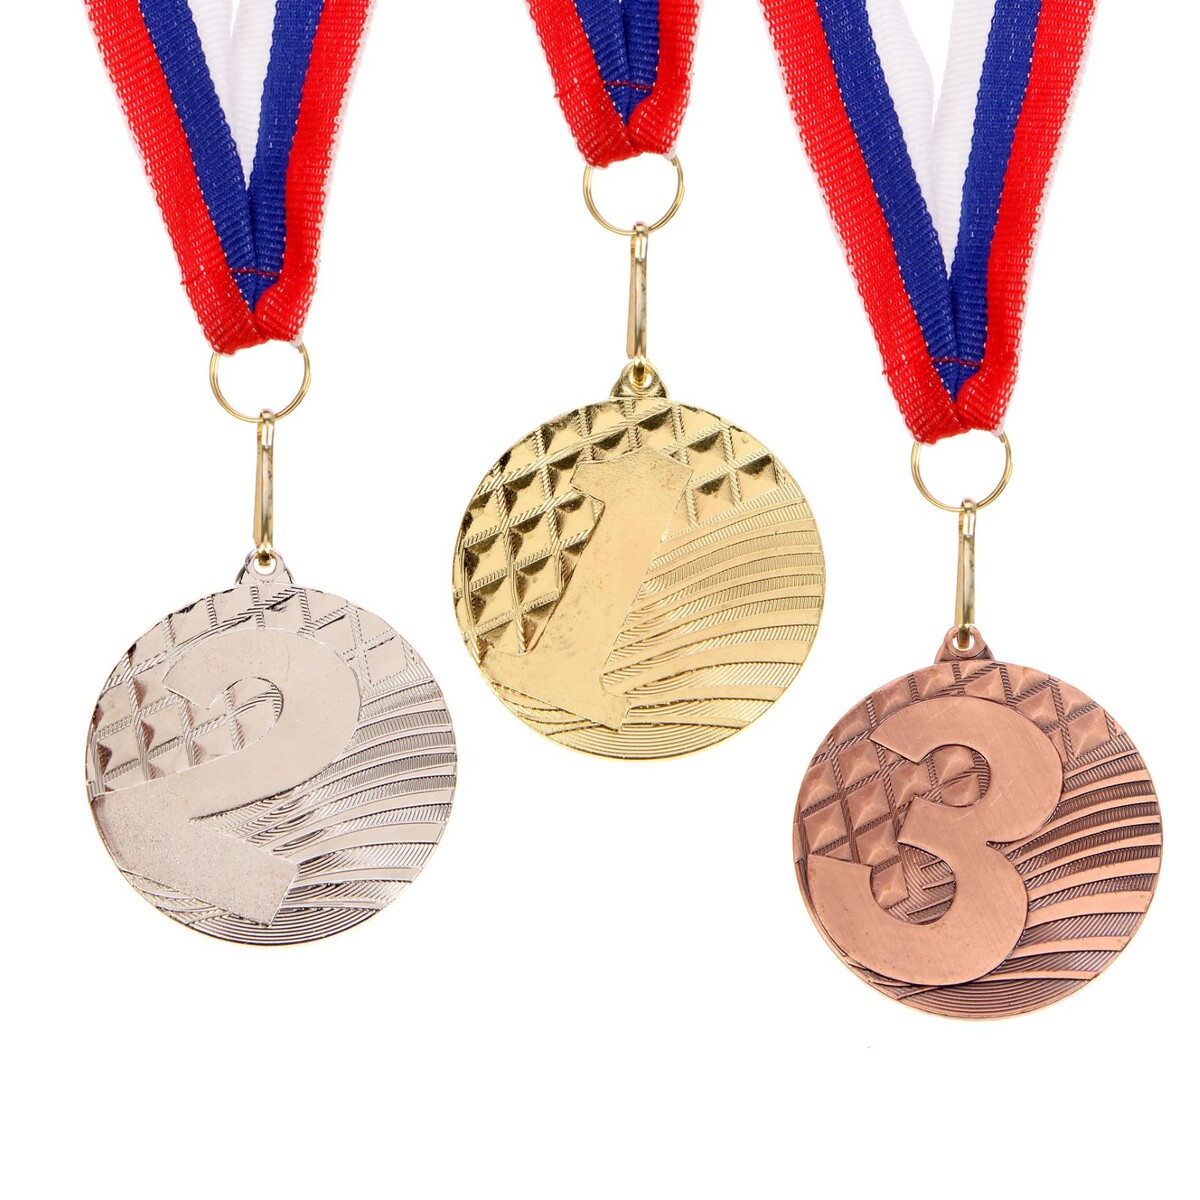 Медаль призовая 048 диам 5 см. 3 место. цвет бронз. с лентой медаль призовая 029 диам 5 см 3 место бронз с лентой